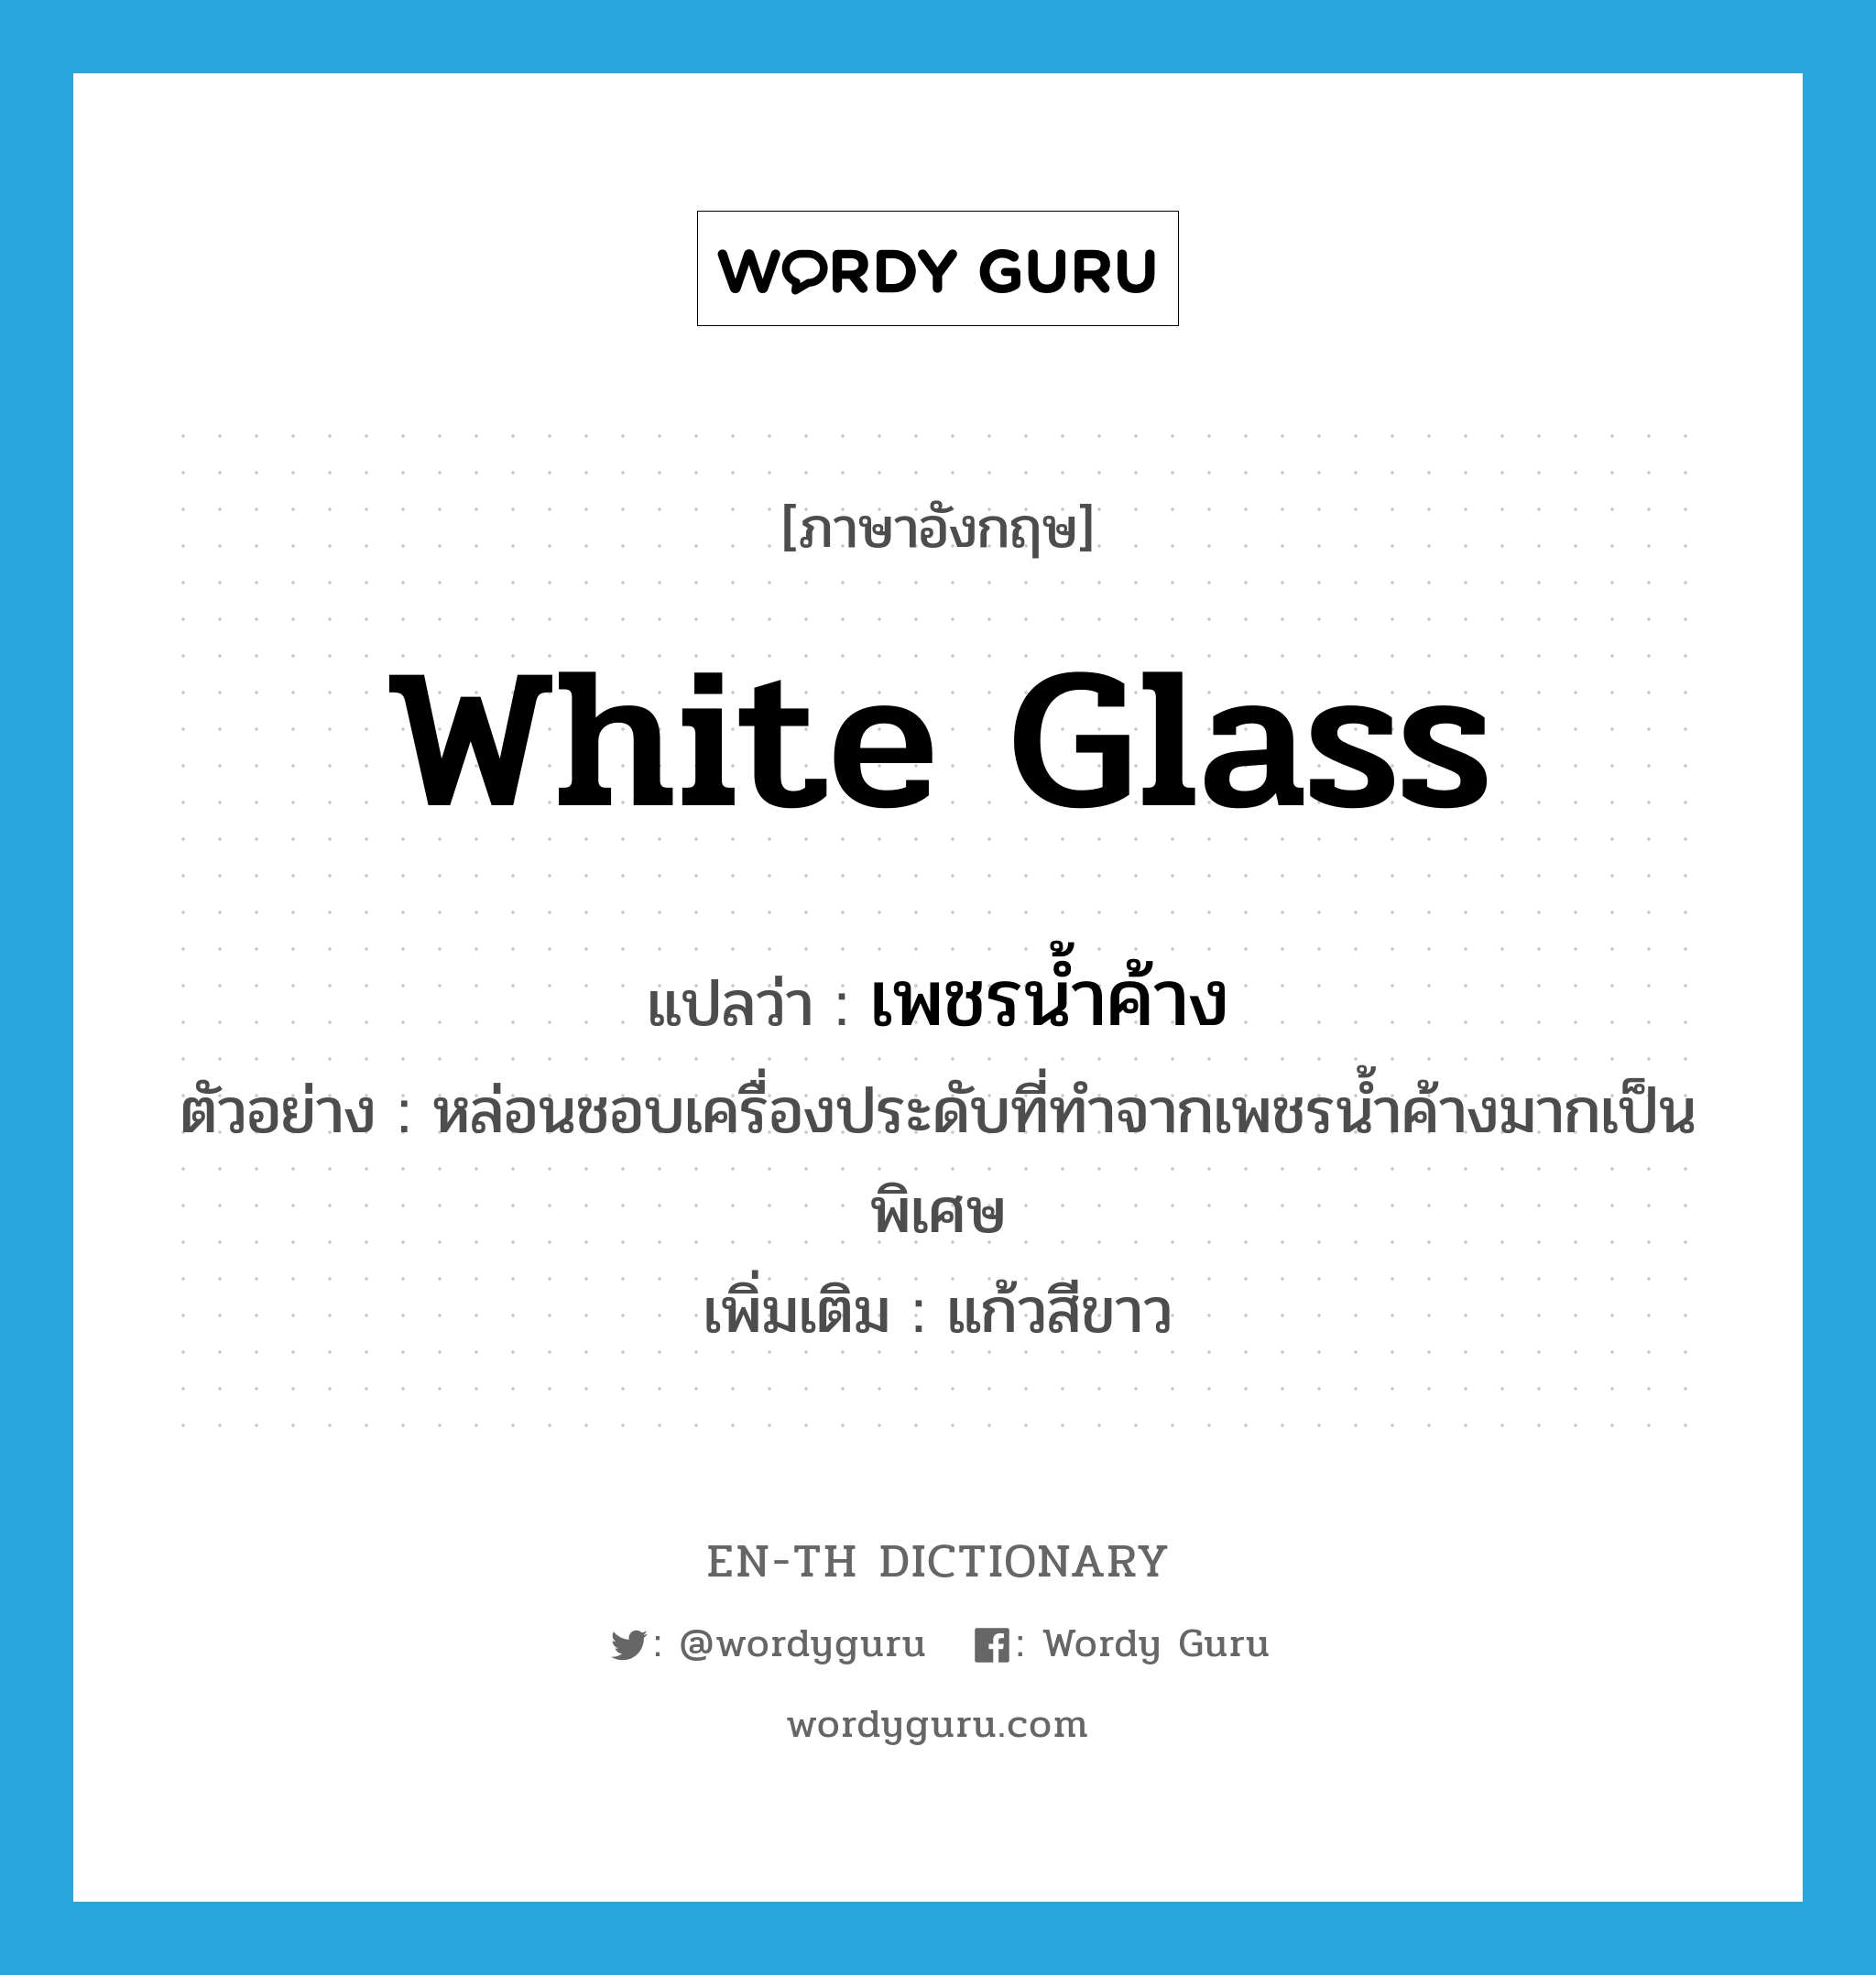 white glass แปลว่า?, คำศัพท์ภาษาอังกฤษ white glass แปลว่า เพชรน้ำค้าง ประเภท N ตัวอย่าง หล่อนชอบเครื่องประดับที่ทำจากเพชรน้ำค้างมากเป็นพิเศษ เพิ่มเติม แก้วสีขาว หมวด N